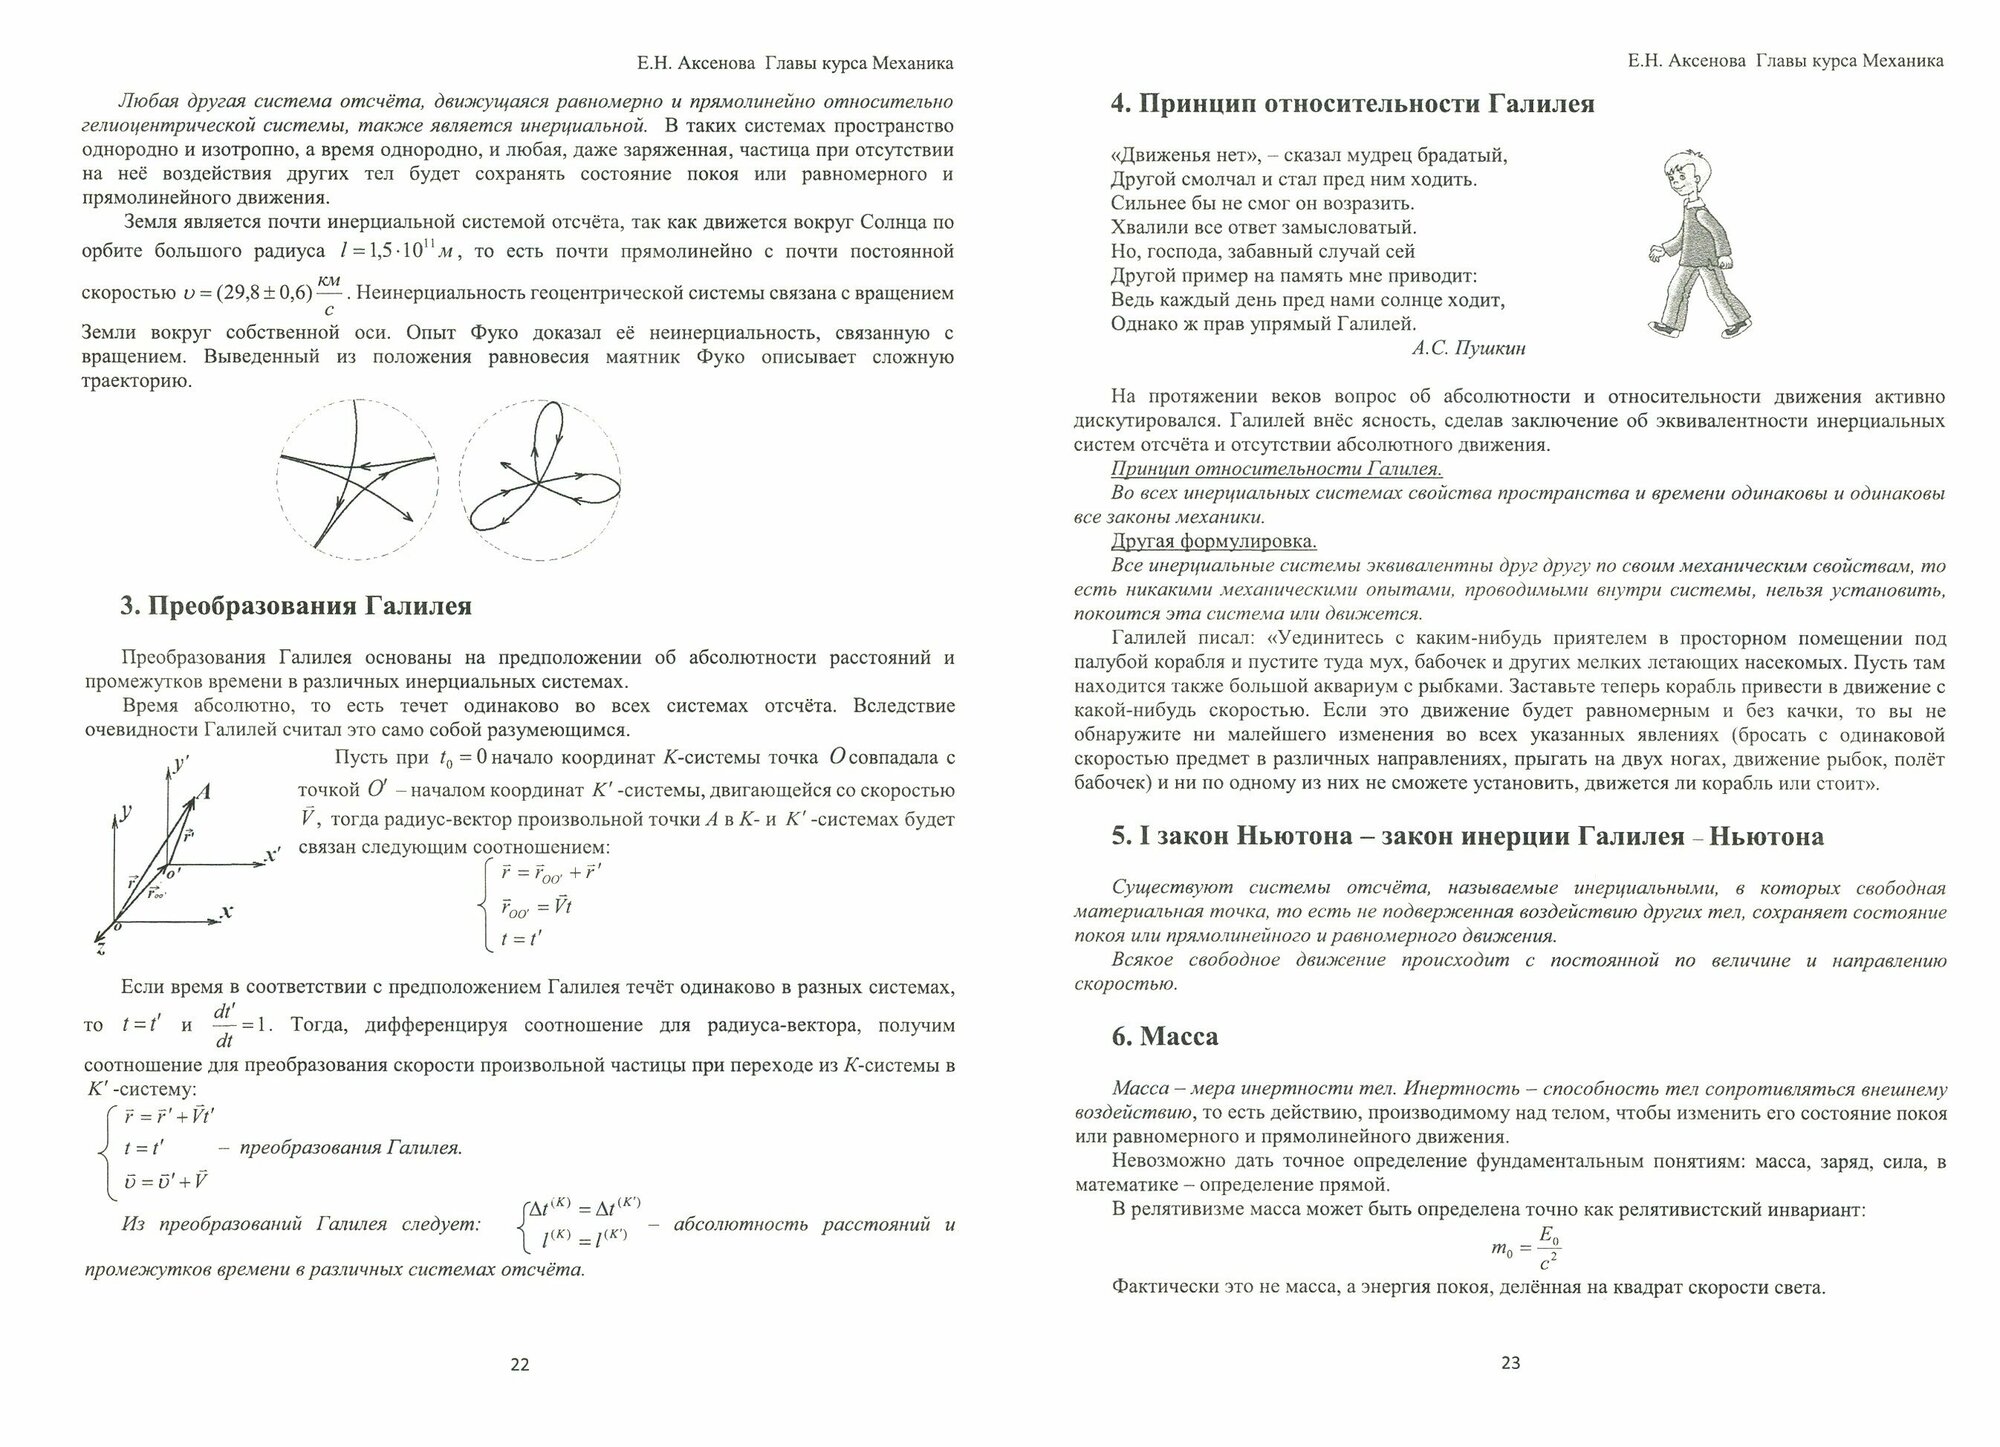 Общая физика. Механика (главы курса). Учебное пособие - фото №3